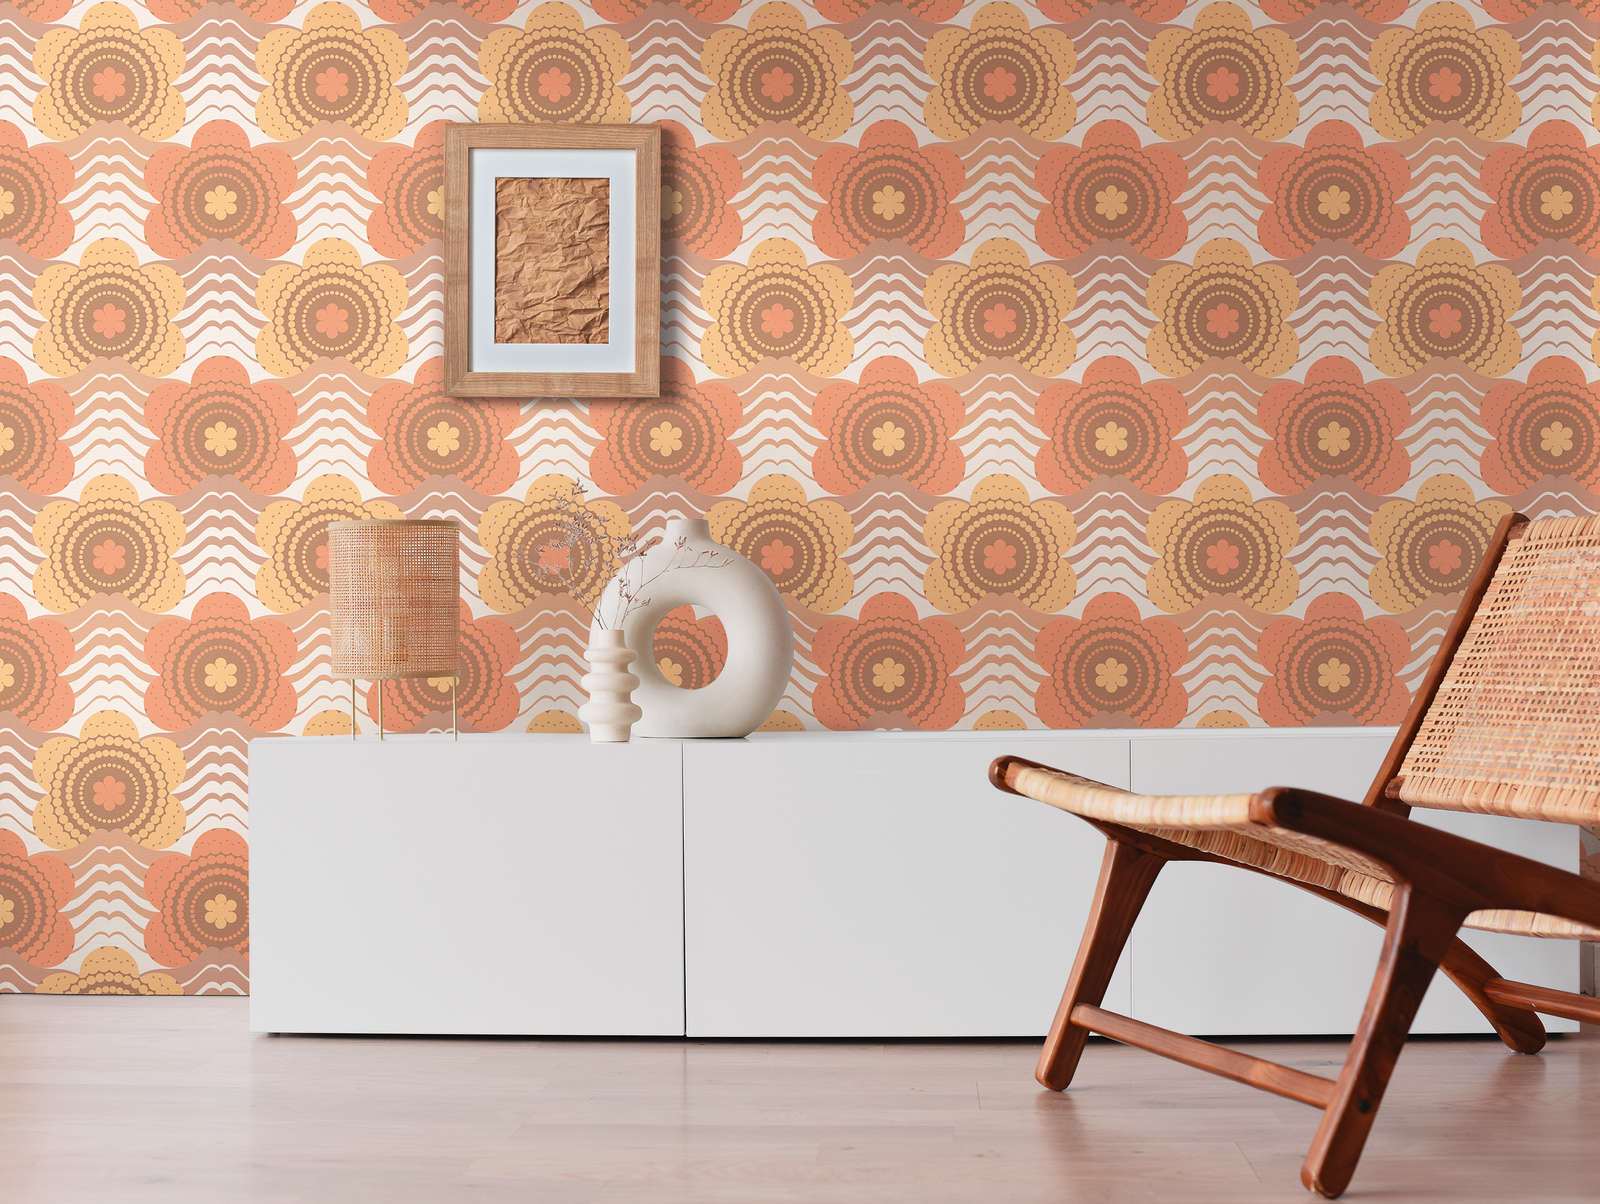             Florale Bemusterung im Dots- Design im Stil der 70er Jahre – Braun, Orange, Gelb
        